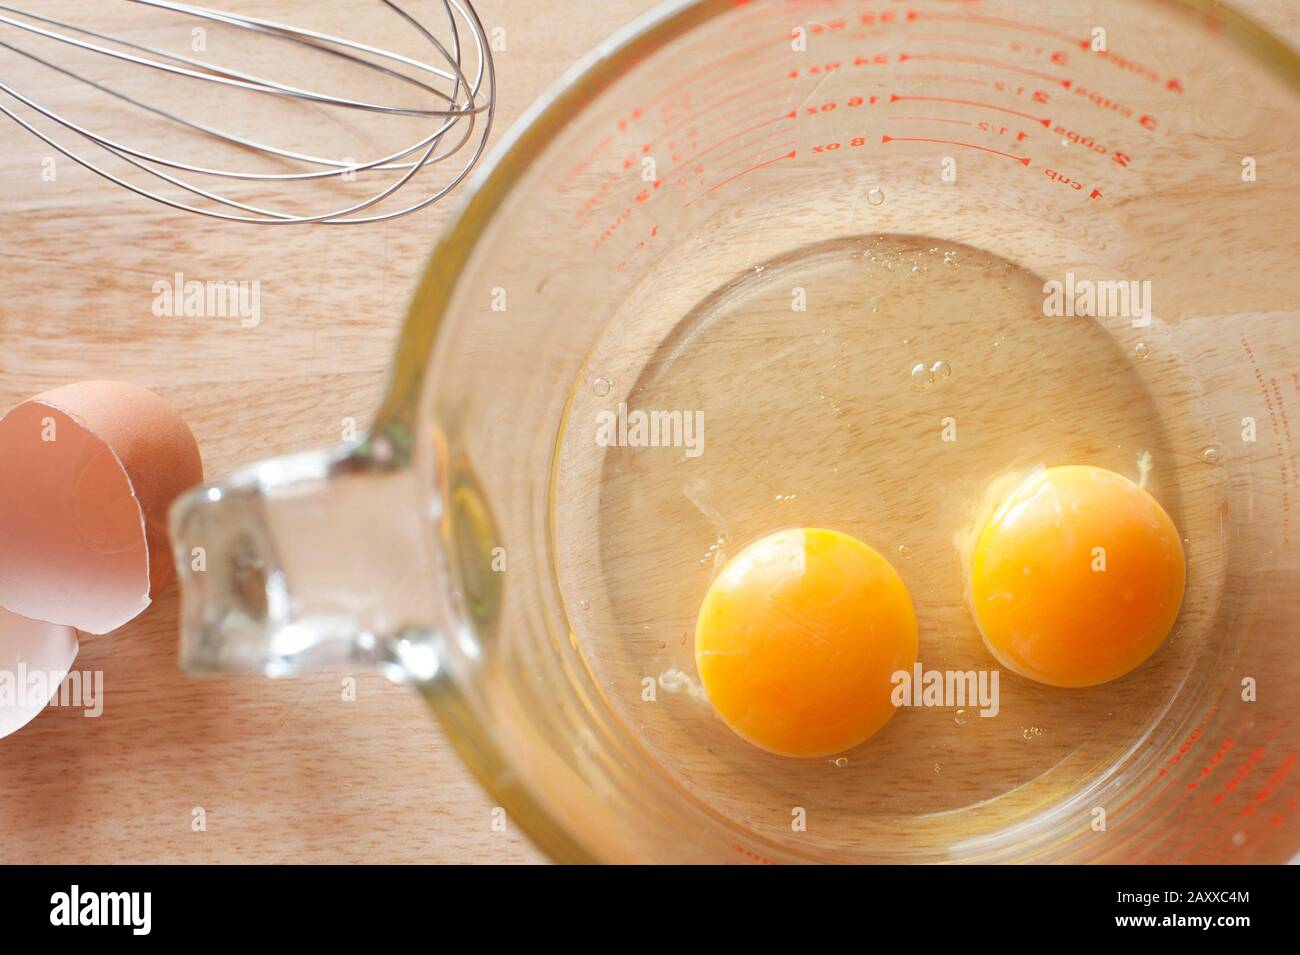 Blick über die Decke von zwei gesunden gelben Eigelb, die in den Boden einer durchsichtigen Messkanne auf einem Küchentisch gebrochen sind, um als Frühstück oder verwendet zu werden Stockfoto